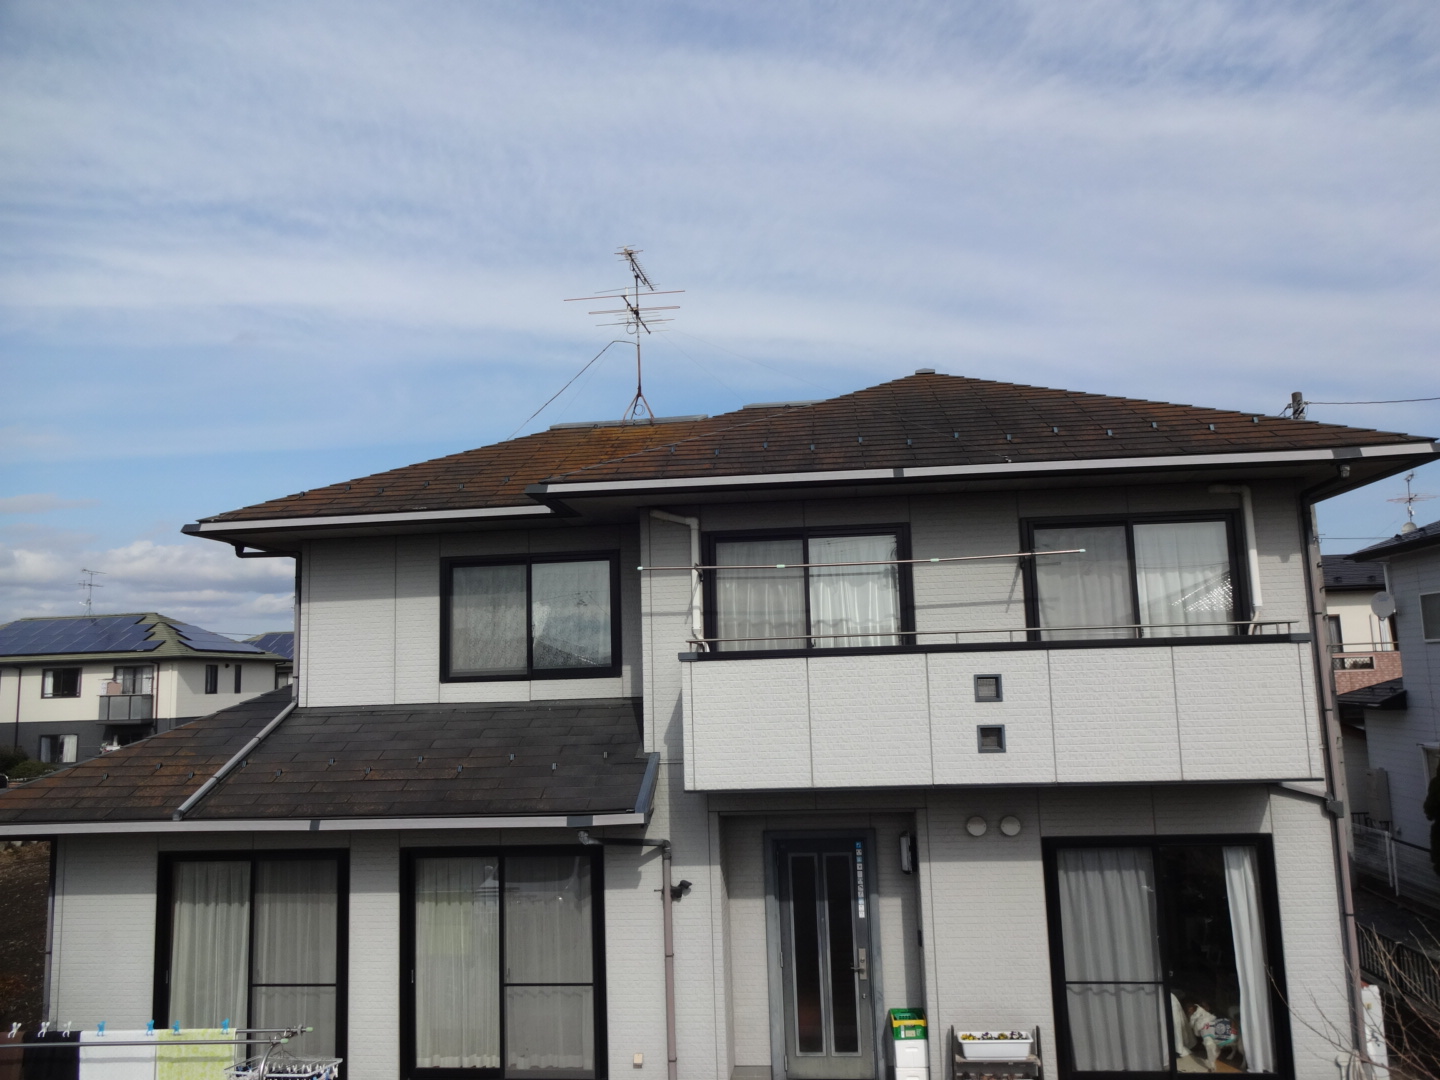 宮城県亘理町で屋根と外壁の塗装工事をしました。S様からアンケートを頂きました。ありがとうございます。